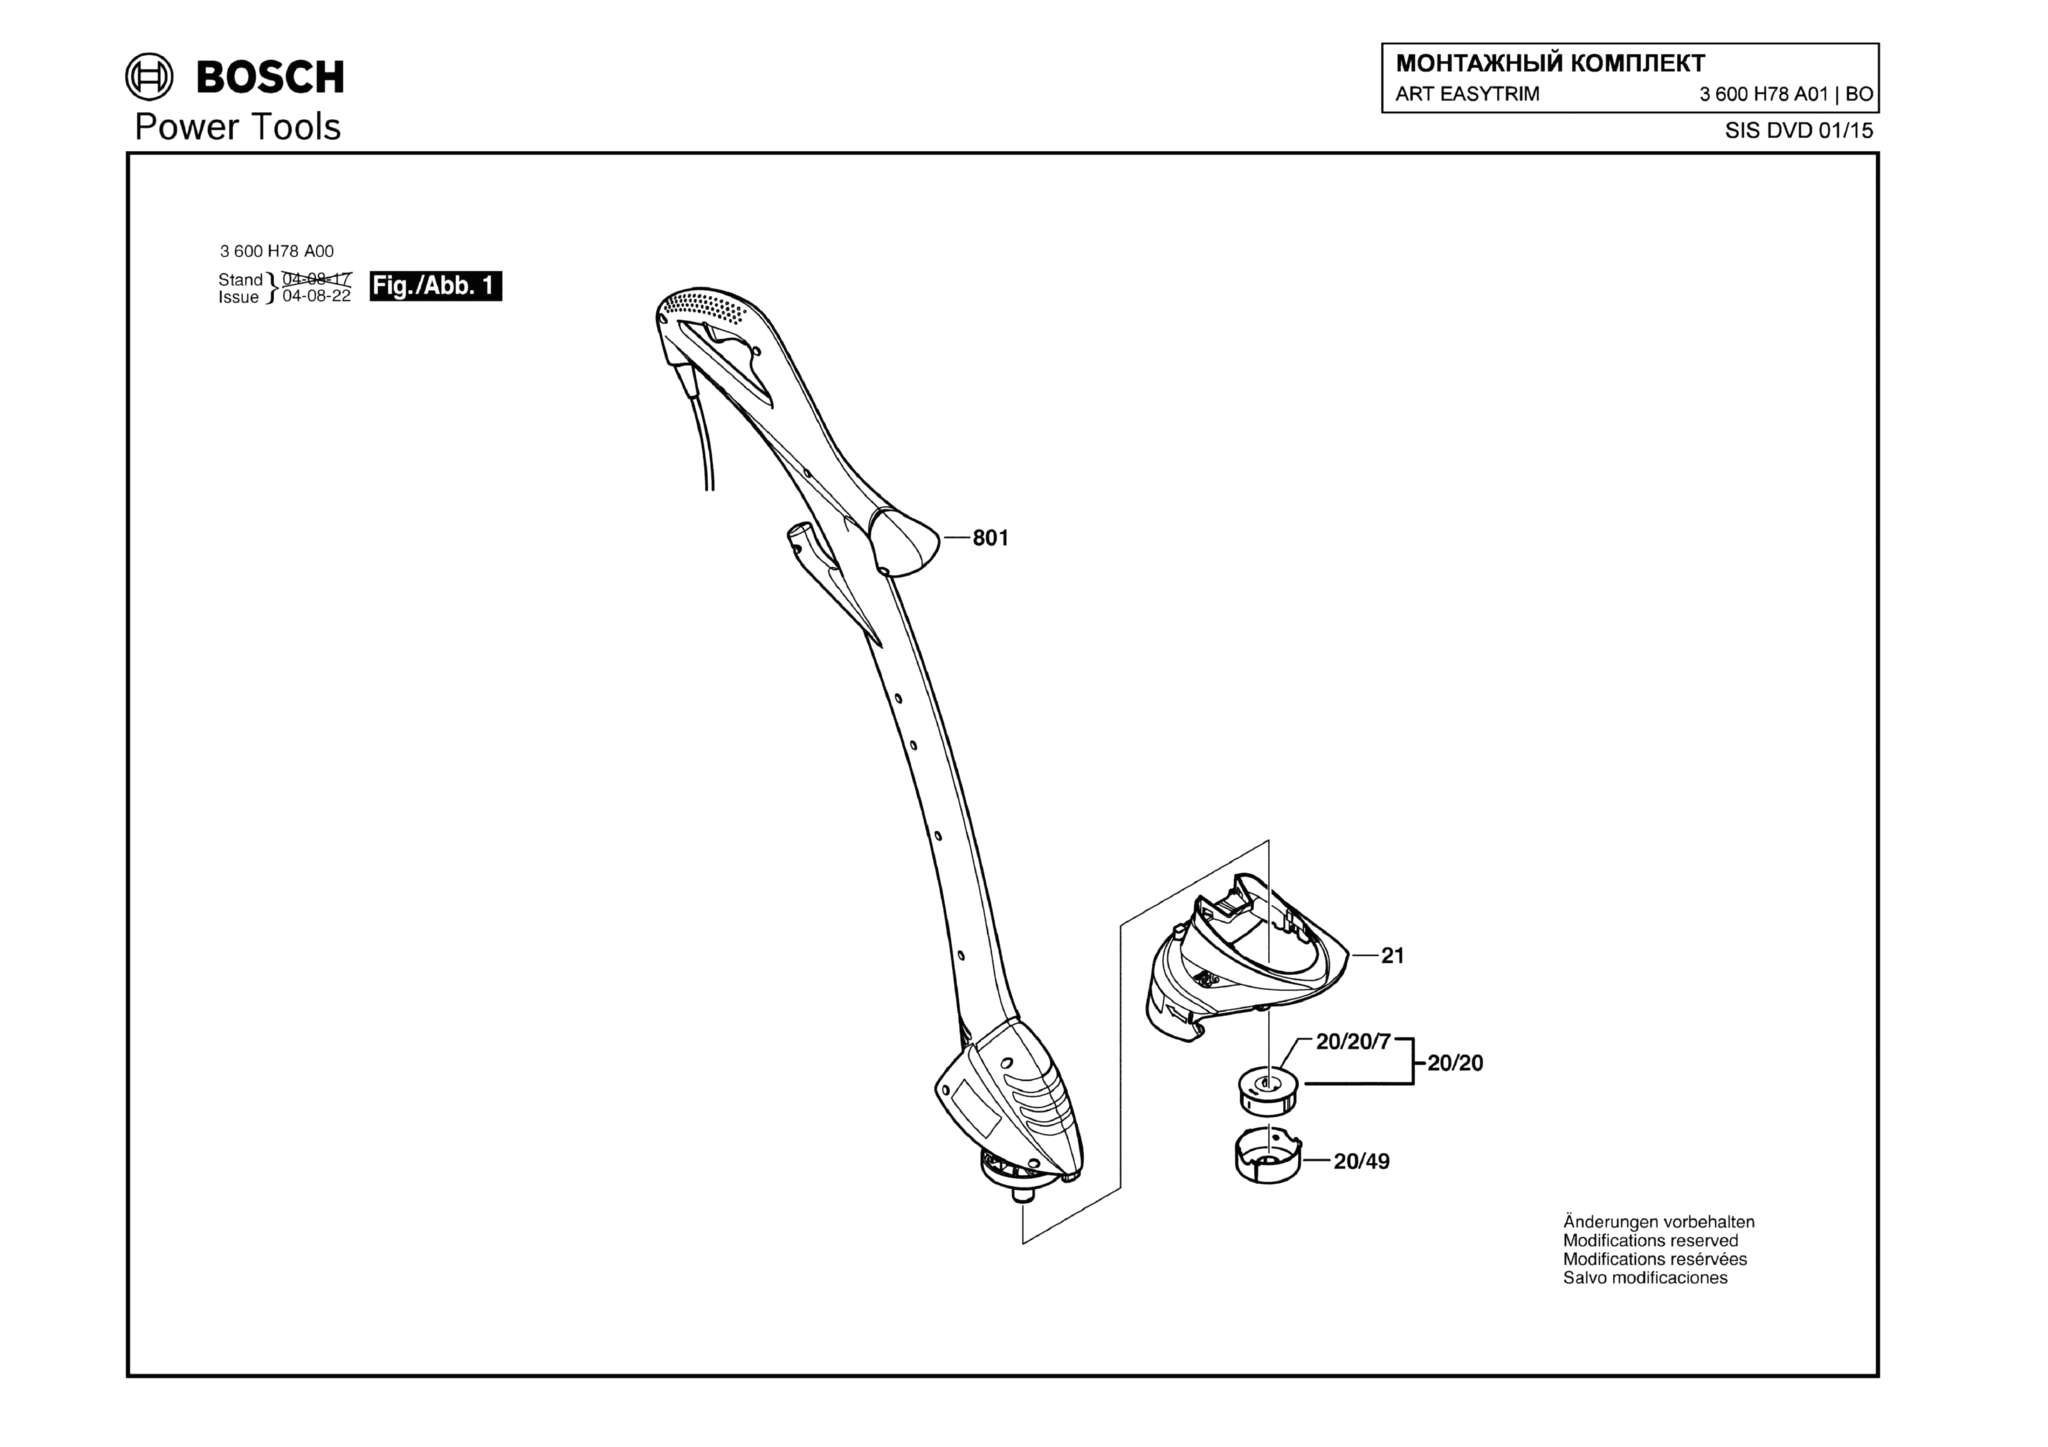 Запчасти, схема и деталировка Bosch ART EASYTRIM (ТИП 3600H78A01)